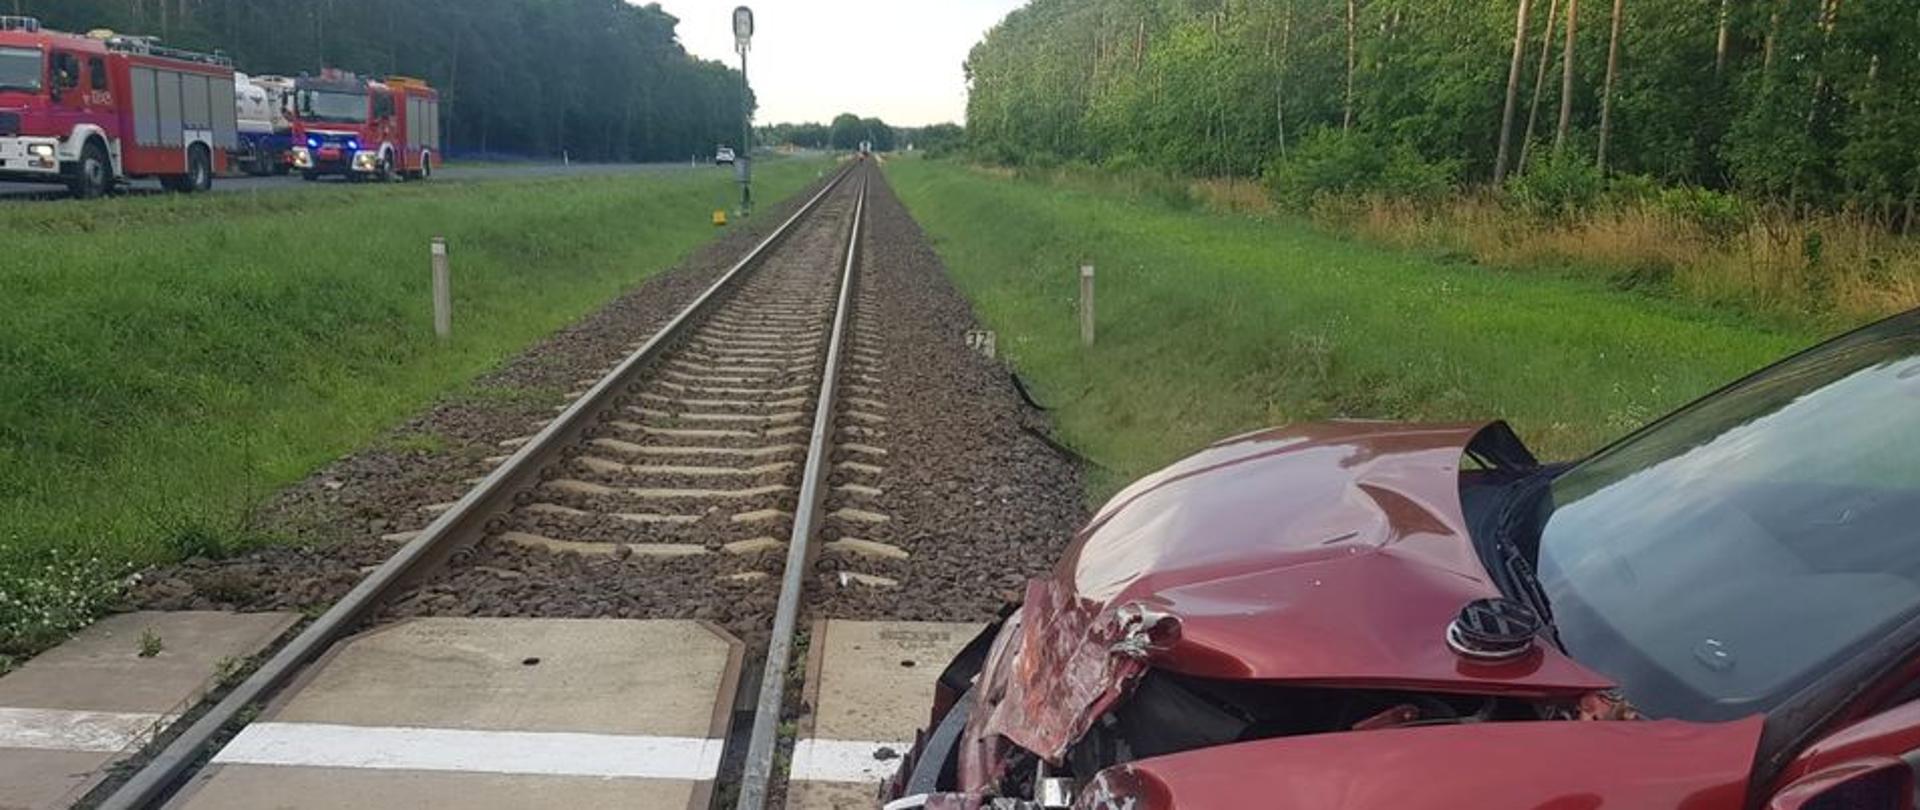 Na zdjęciu widać rozbity pojazd osobowy na przejeździe kolejowym oraz w oddali wozy strażackie 